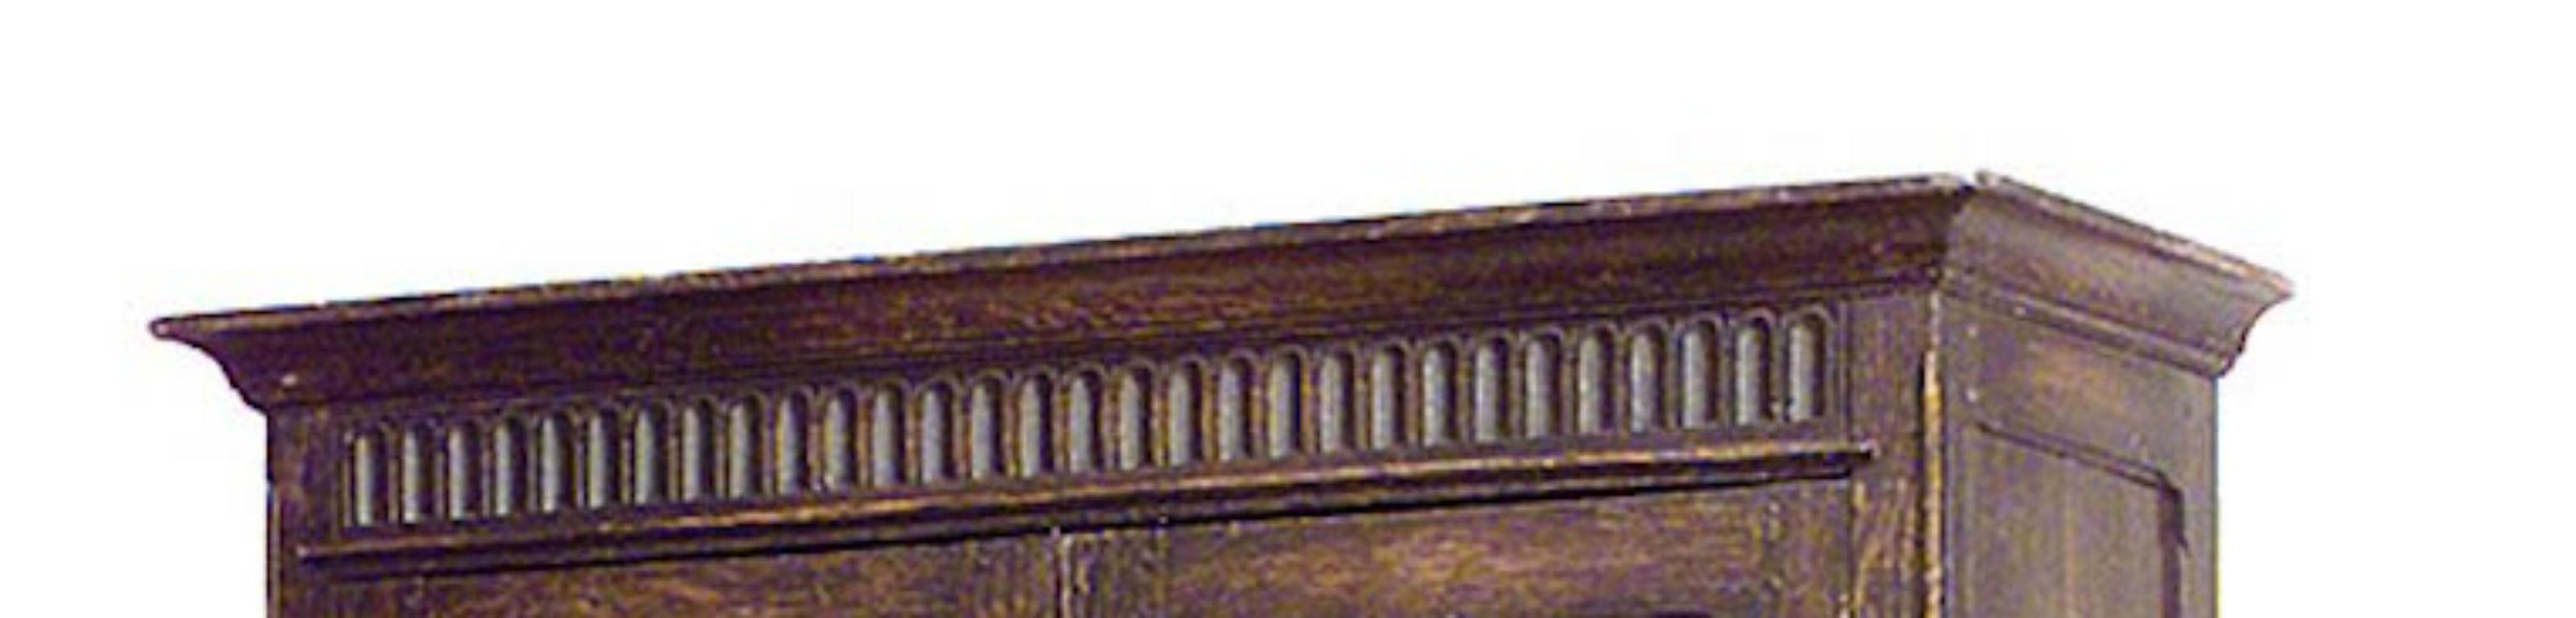 Armoire à 2 portes en chêne teinté de style renaissance anglaise (19e siècle) avec un design de pliage du linge
